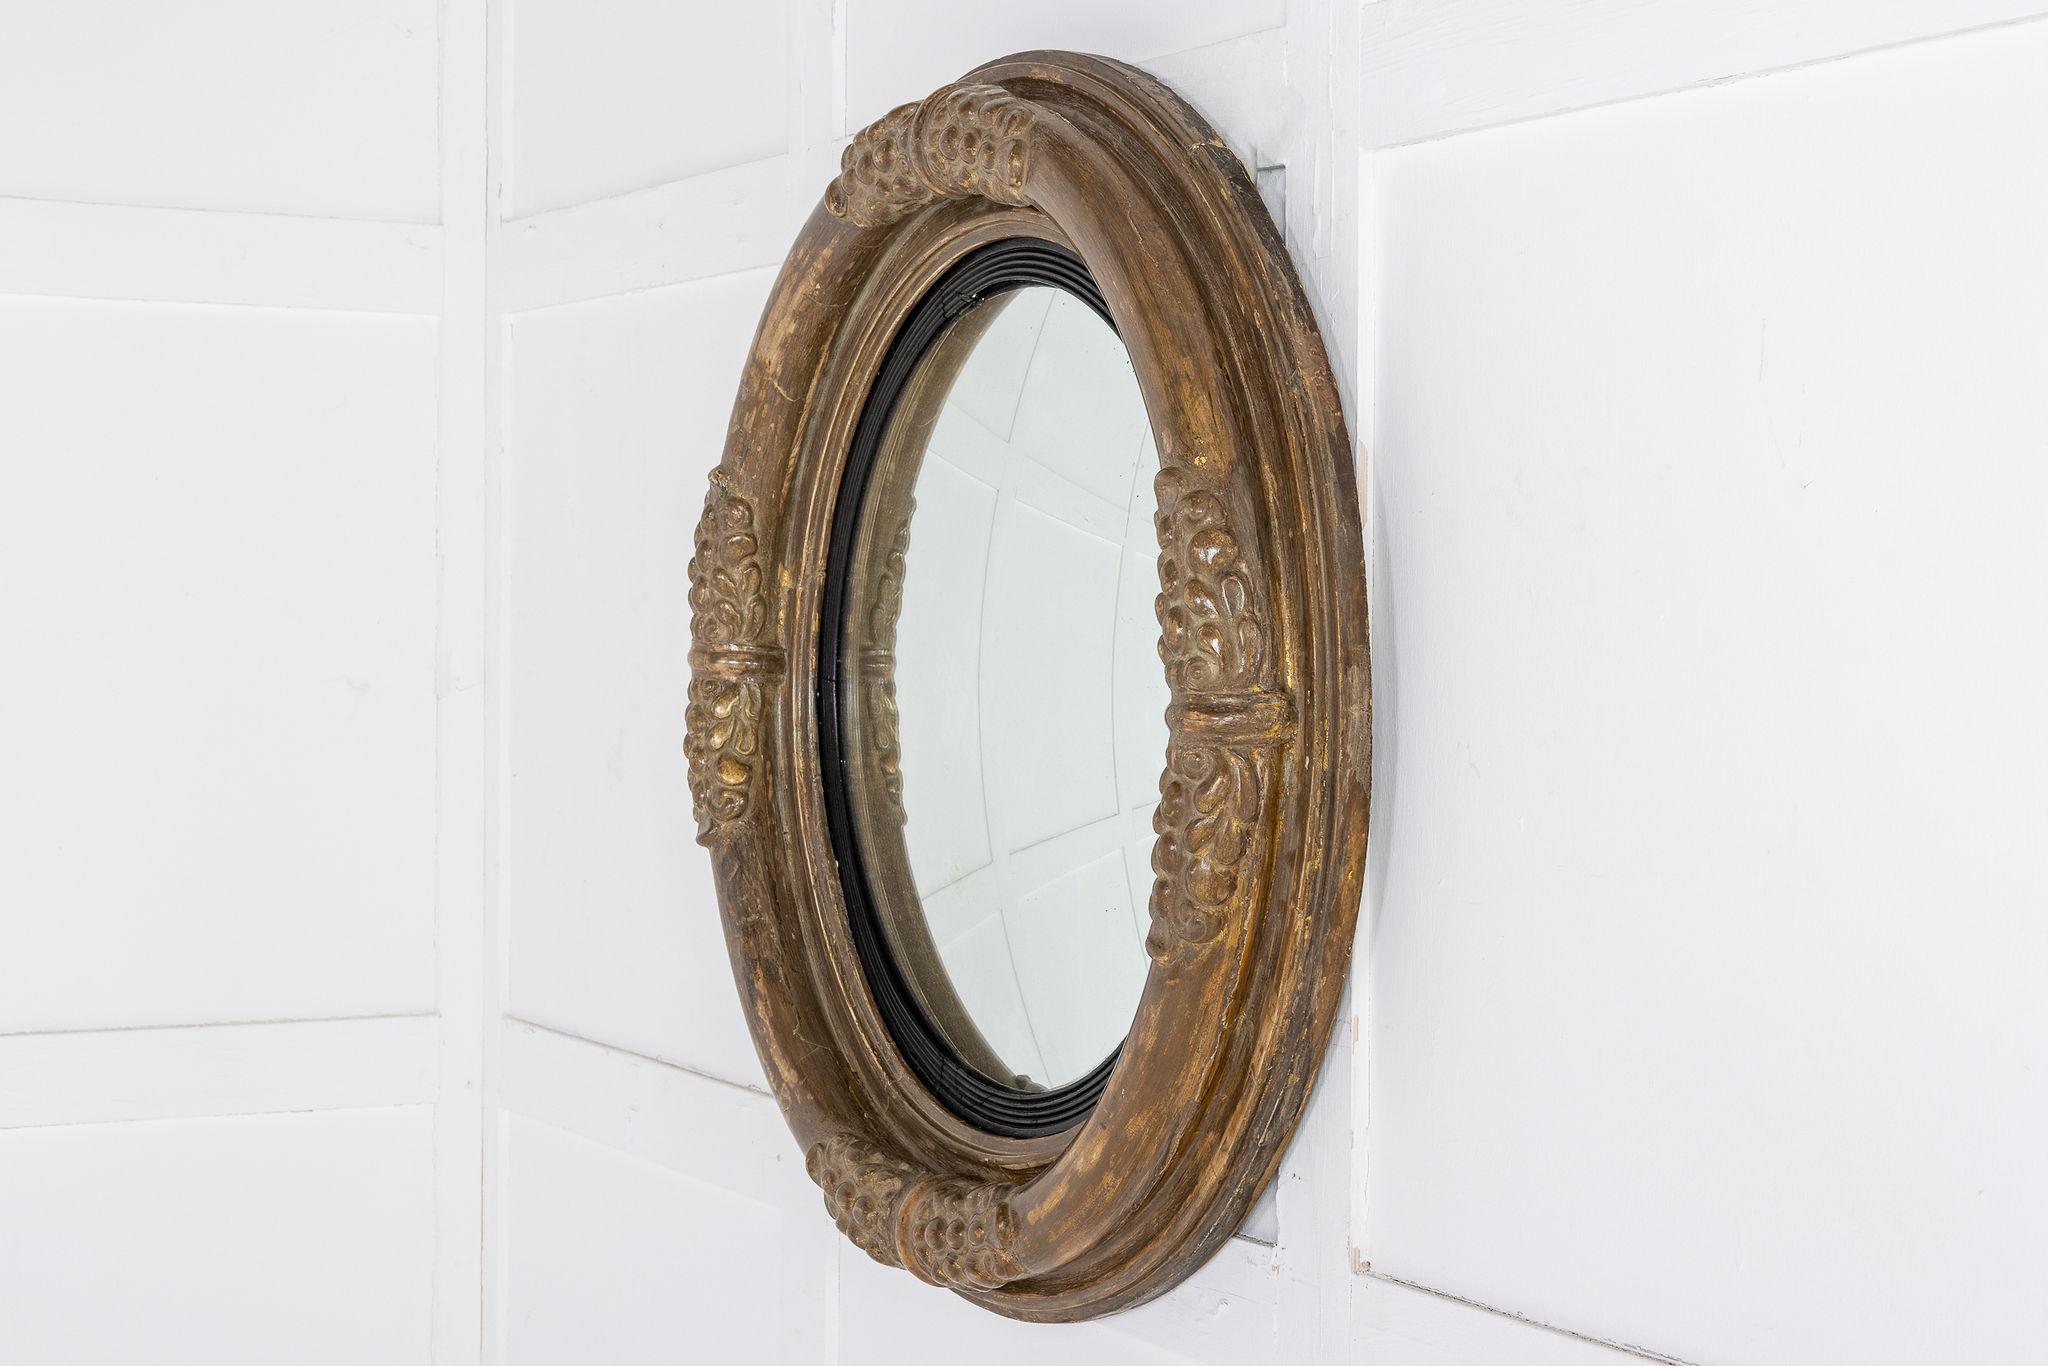 Der Spiegel hat eine typisch konvexe Form, aber einen Großteil der ursprünglichen Vergoldung und eine reizvolle, abgenutzte Oberfläche behalten. Die äußere Leiste ist in der Mitte jeder 